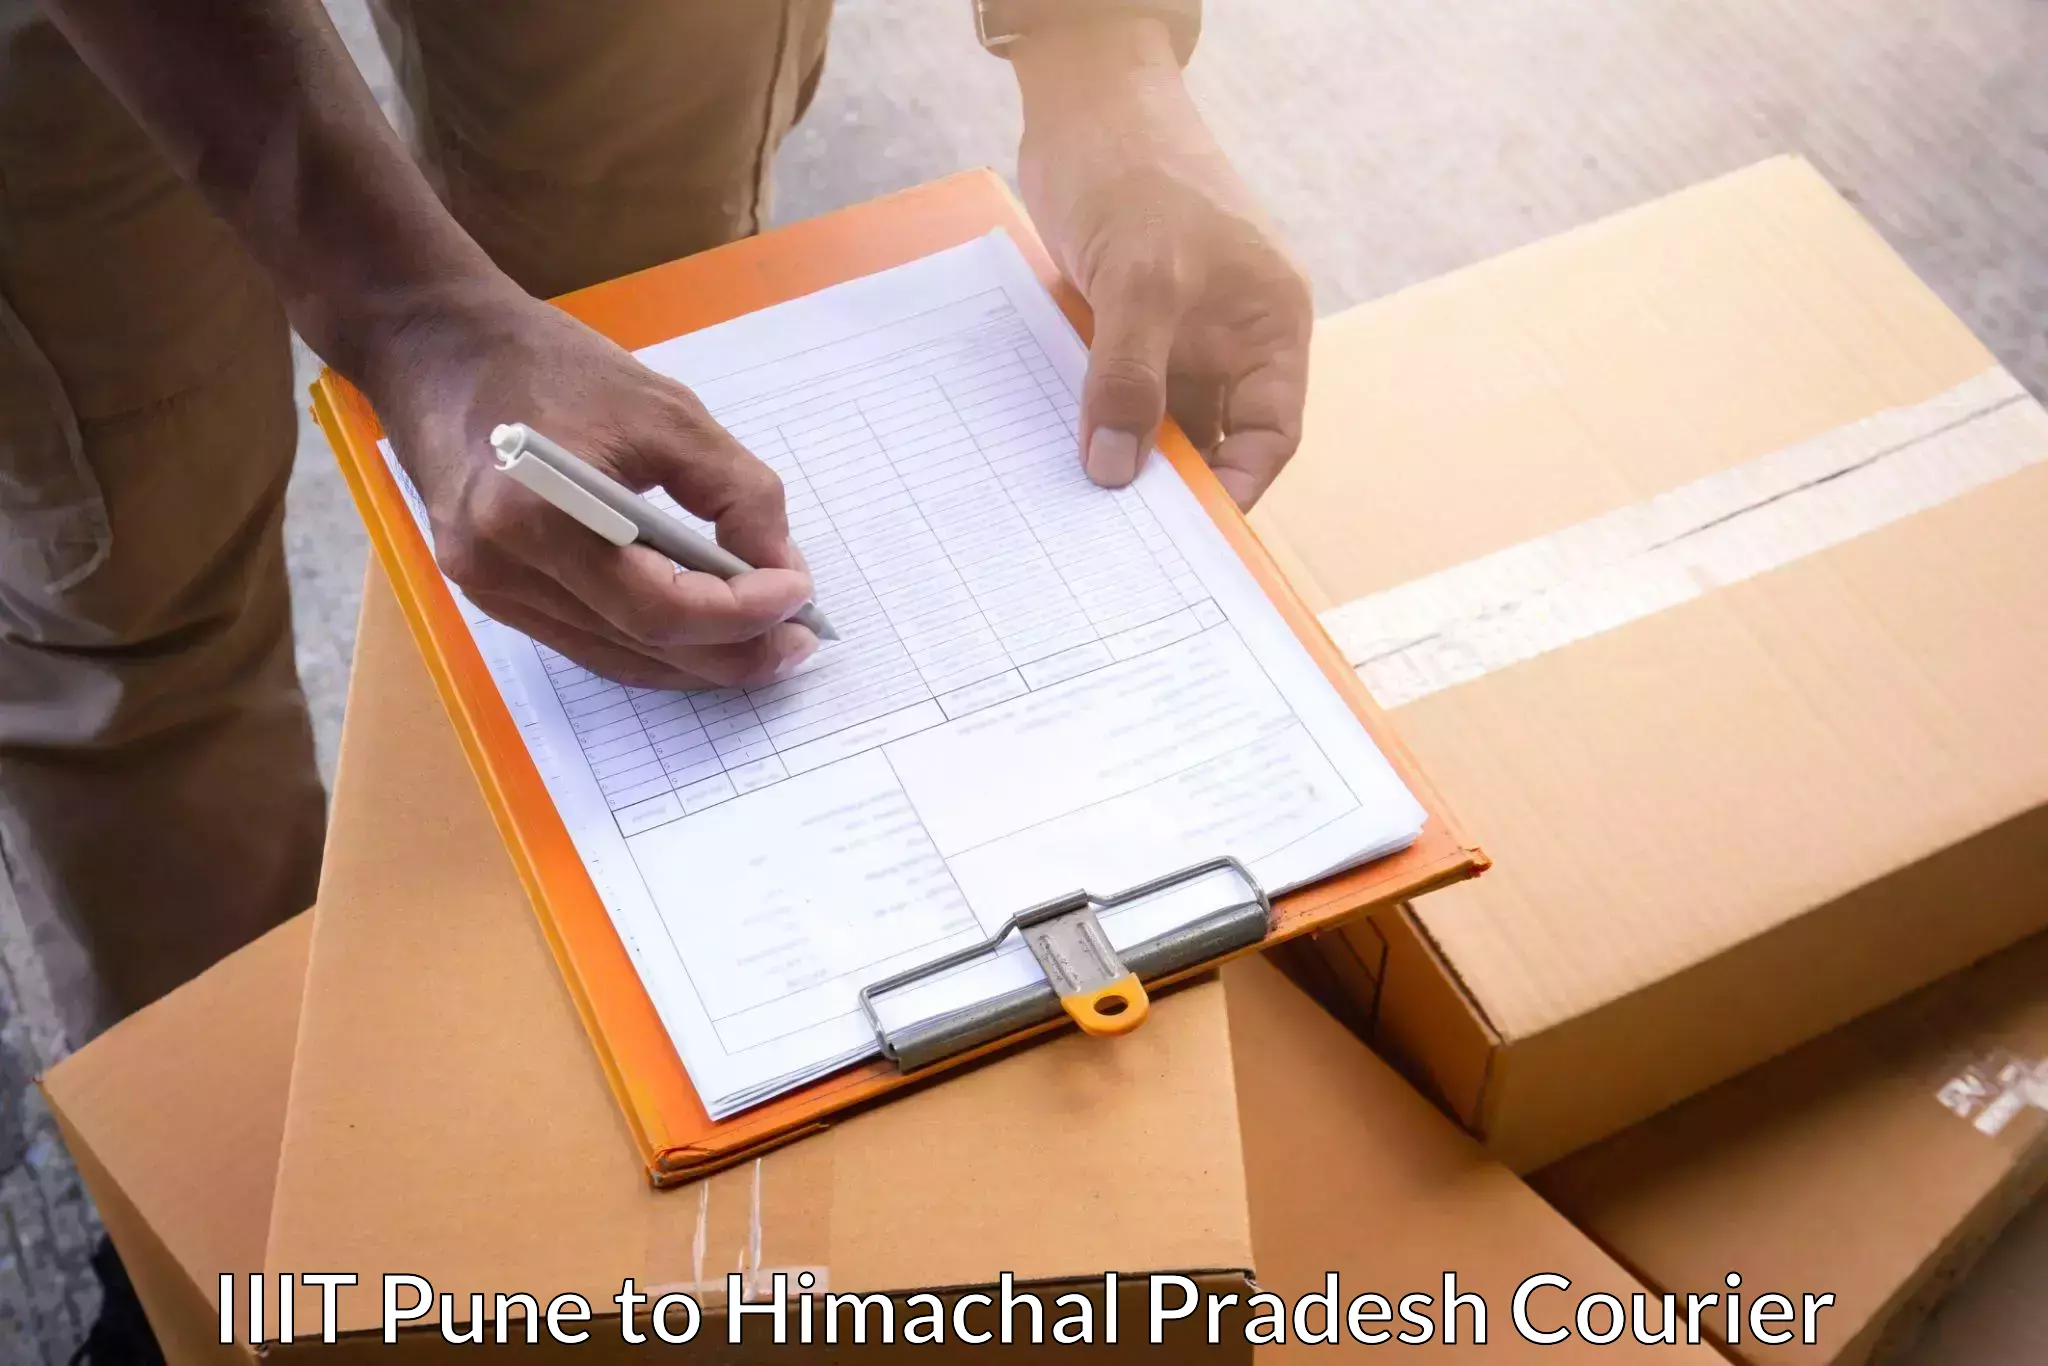 Flexible delivery schedules IIIT Pune to Himachal Pradesh